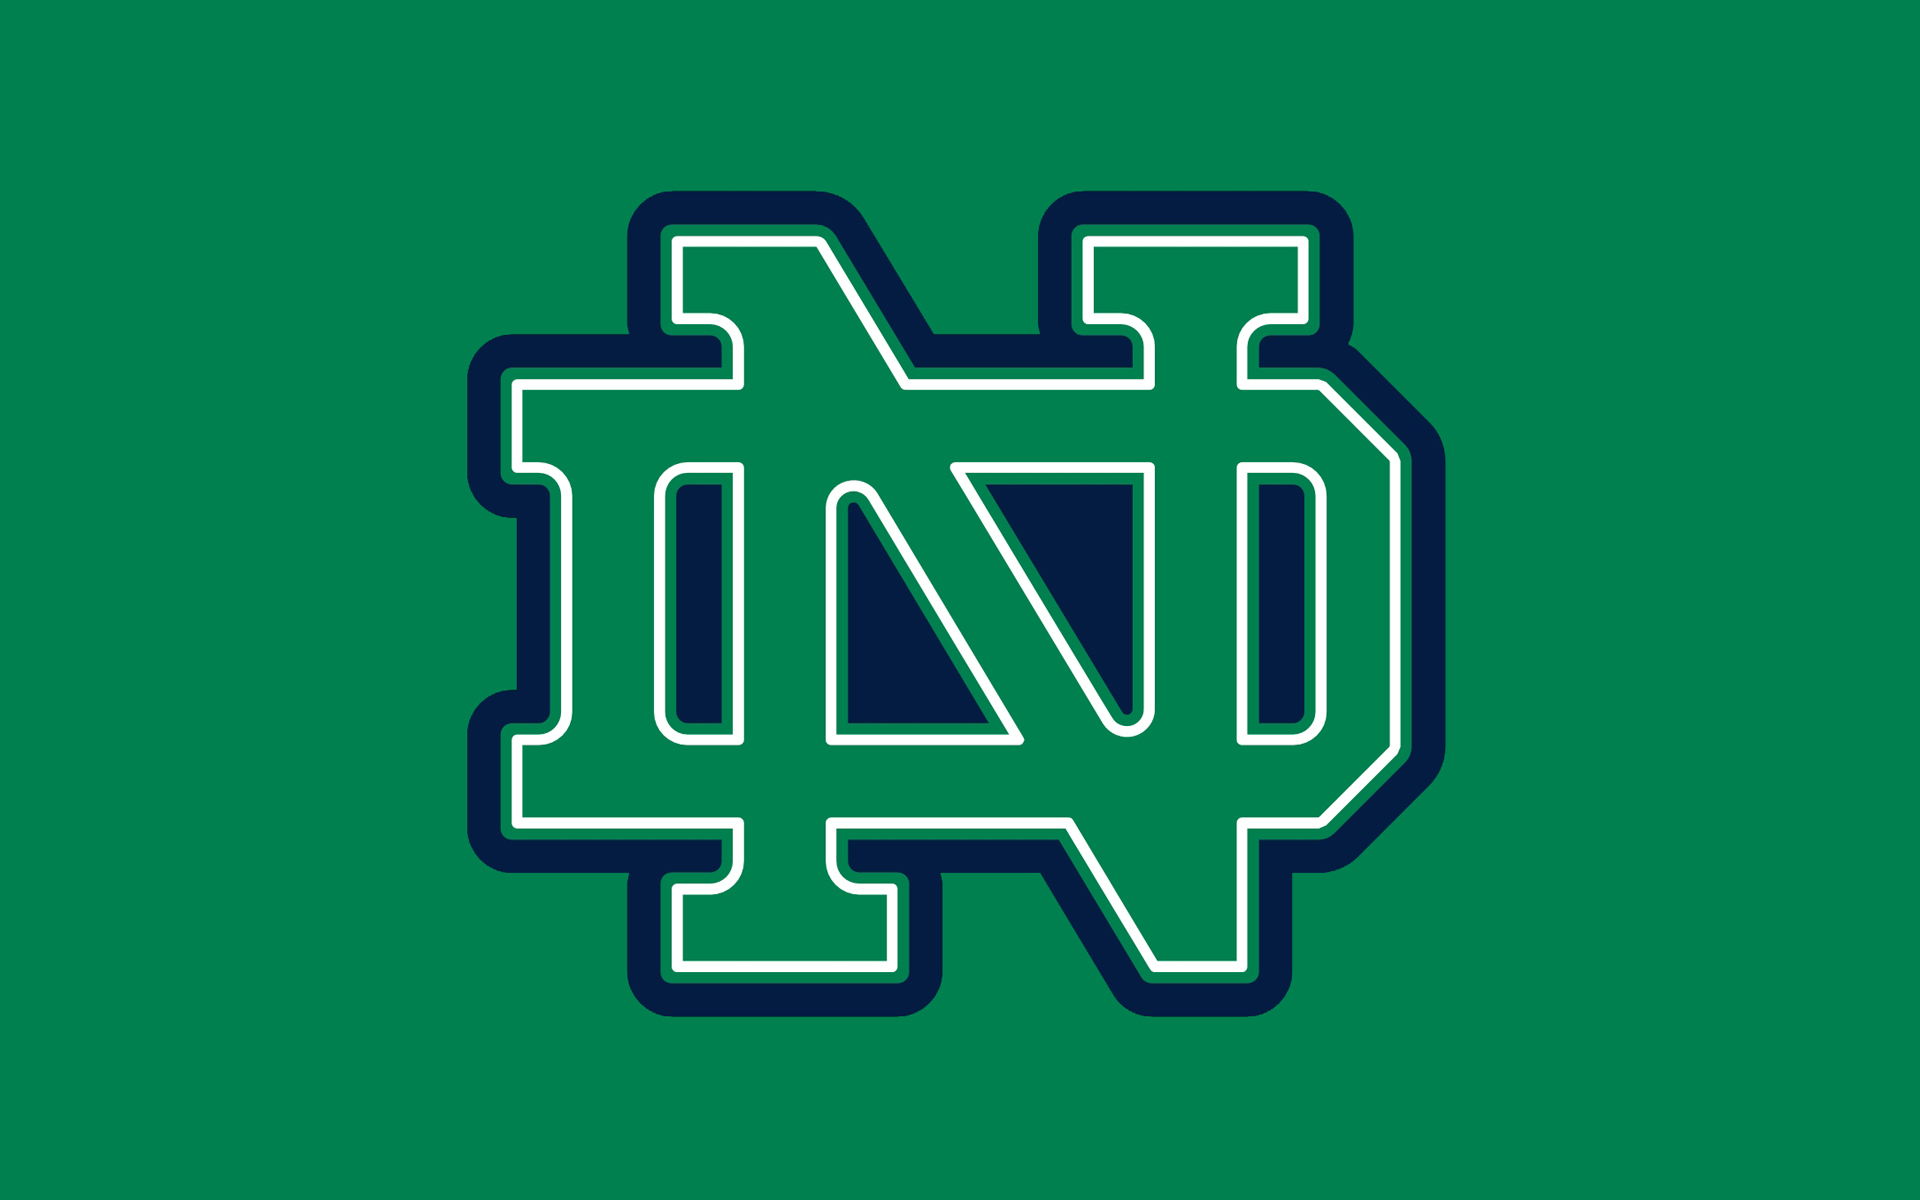 Notre Dame Logo Nail Art - wide 5